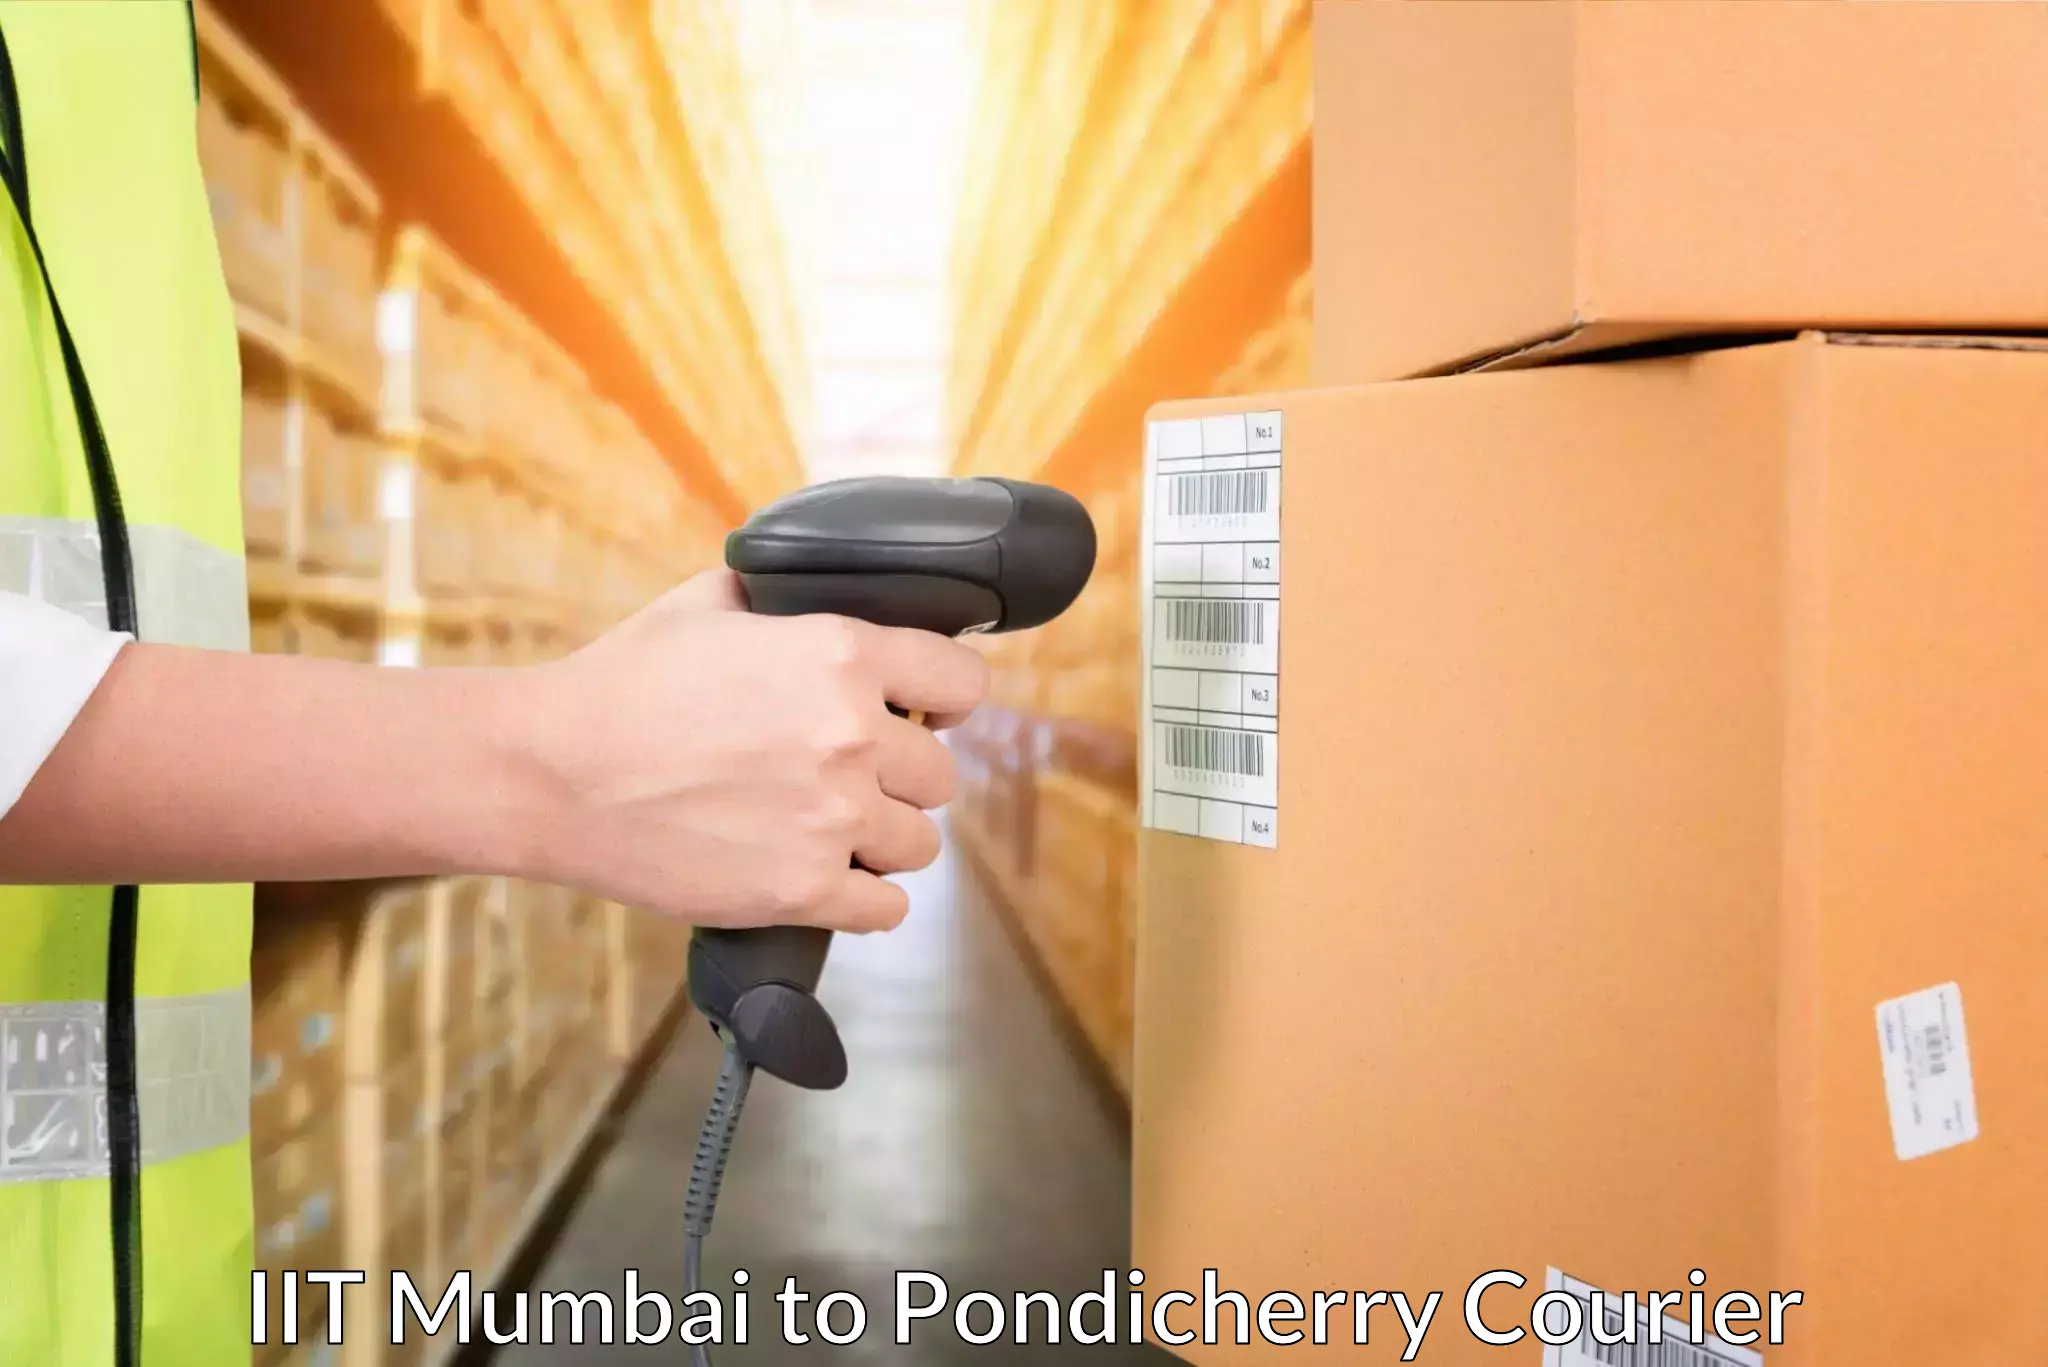 Door-to-door freight service IIT Mumbai to Pondicherry